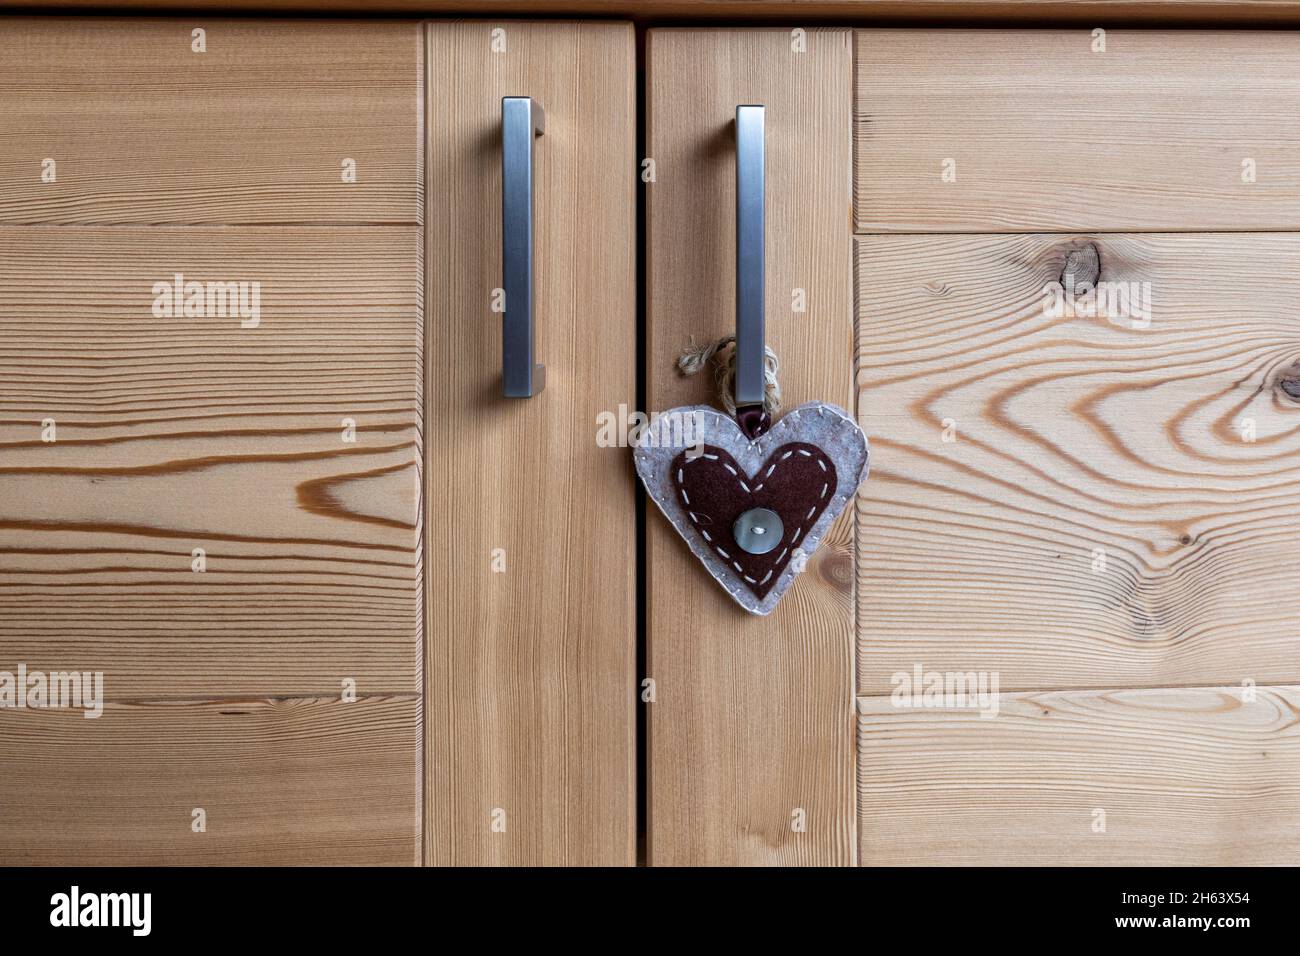 mobilier en bois, détail des portes avec un objet en forme de coeur Banque D'Images